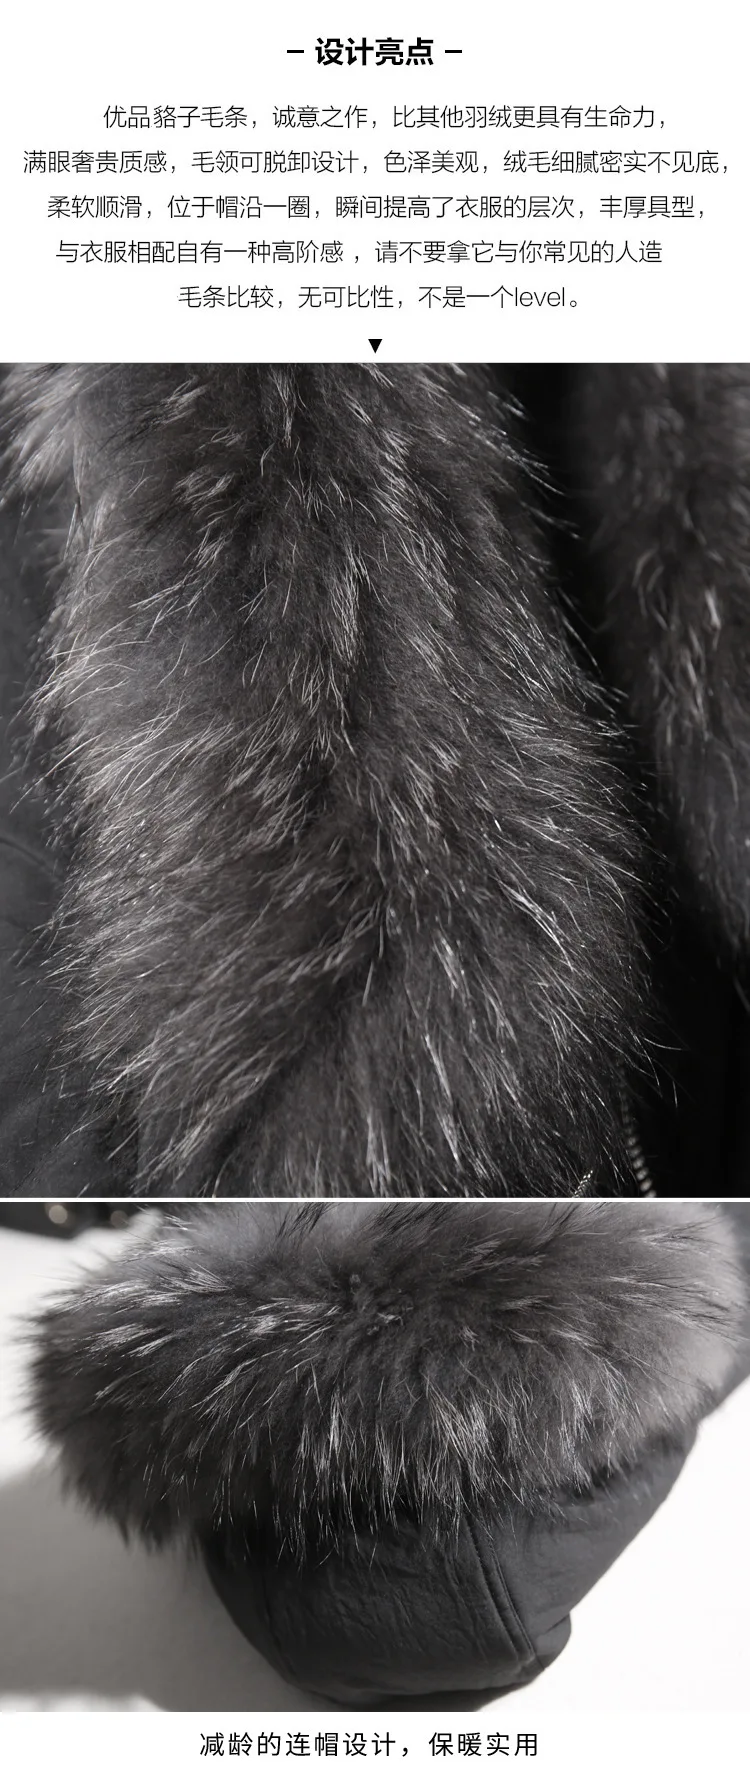 Высококачественная Брендовая женская куртка-пуховик средней длины для отдыха, толстый осенний и зимний женский пуховик с капюшоном